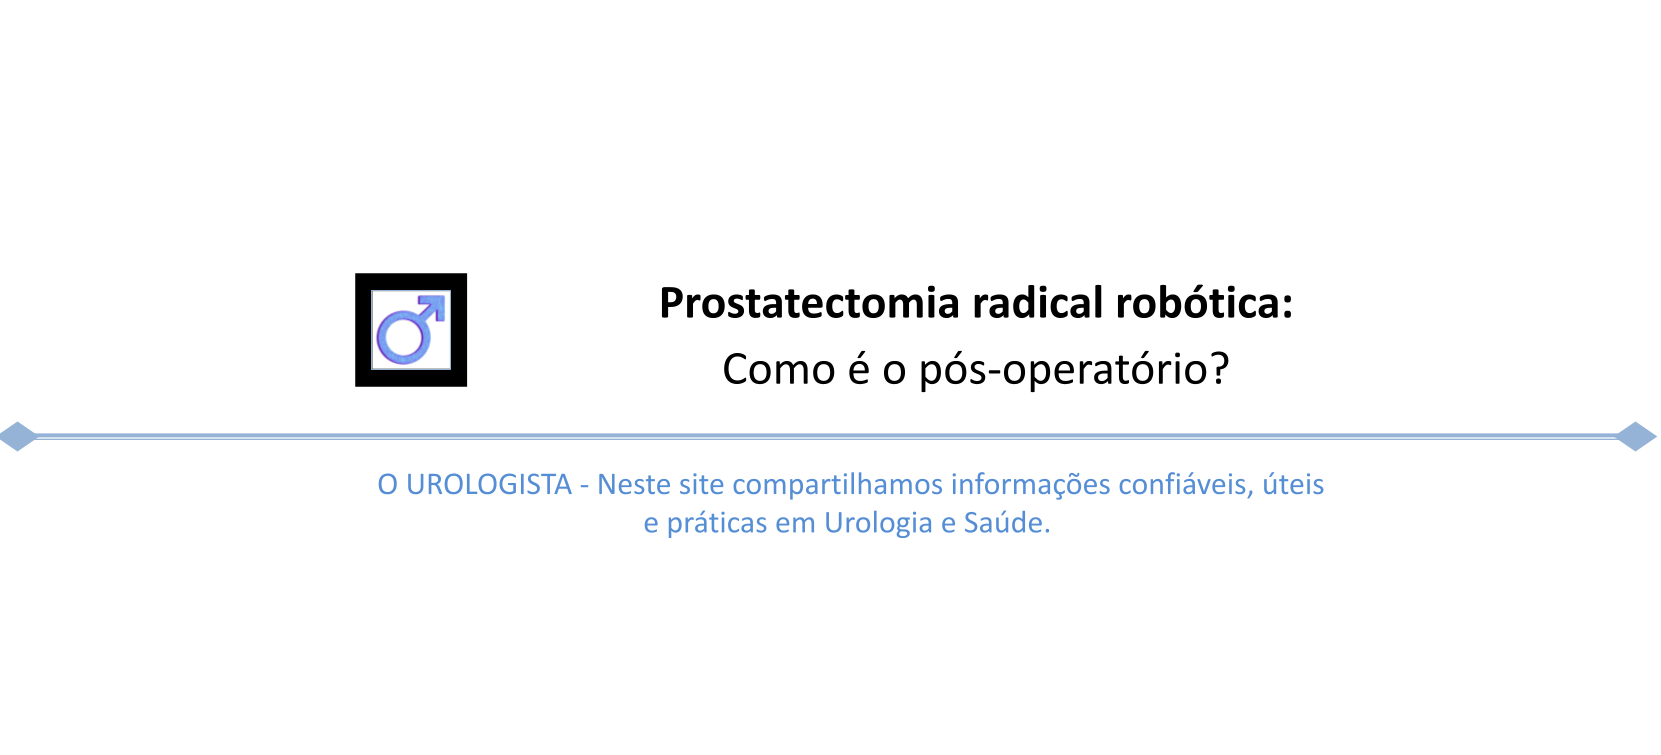 Prostatectomia radical robótica: Como é o pós-operatório?